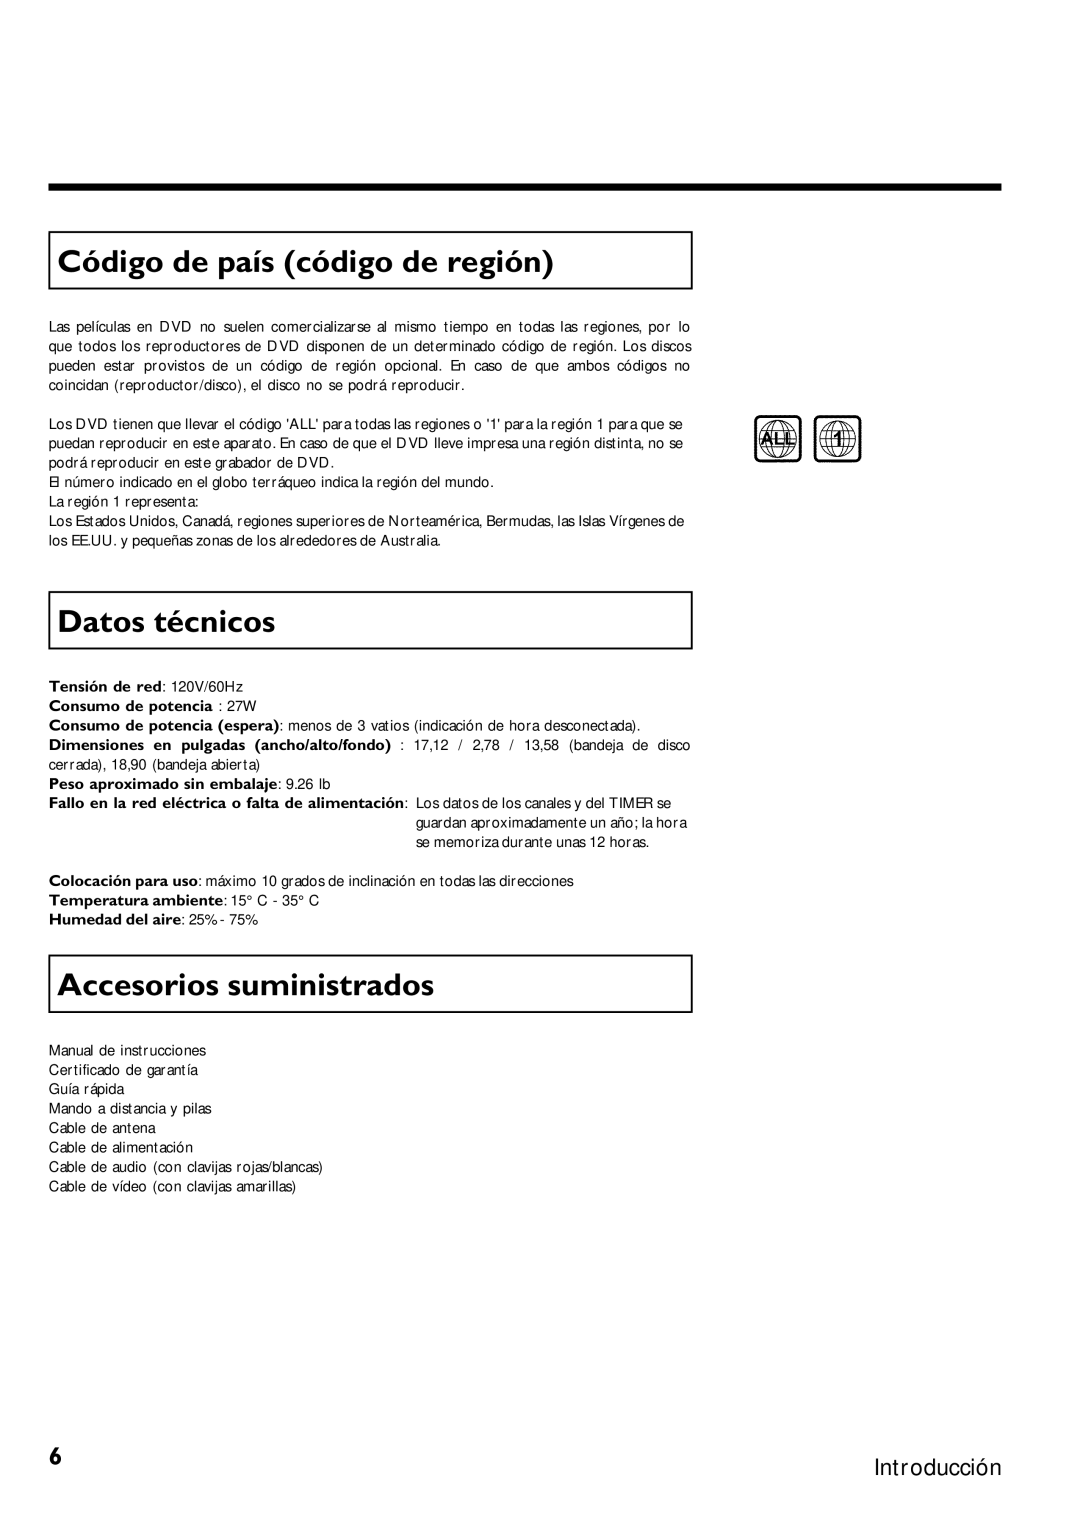 Magnavox MRV640 manual Código de país código de región, Datos técnicos, Accesorios suministrados 